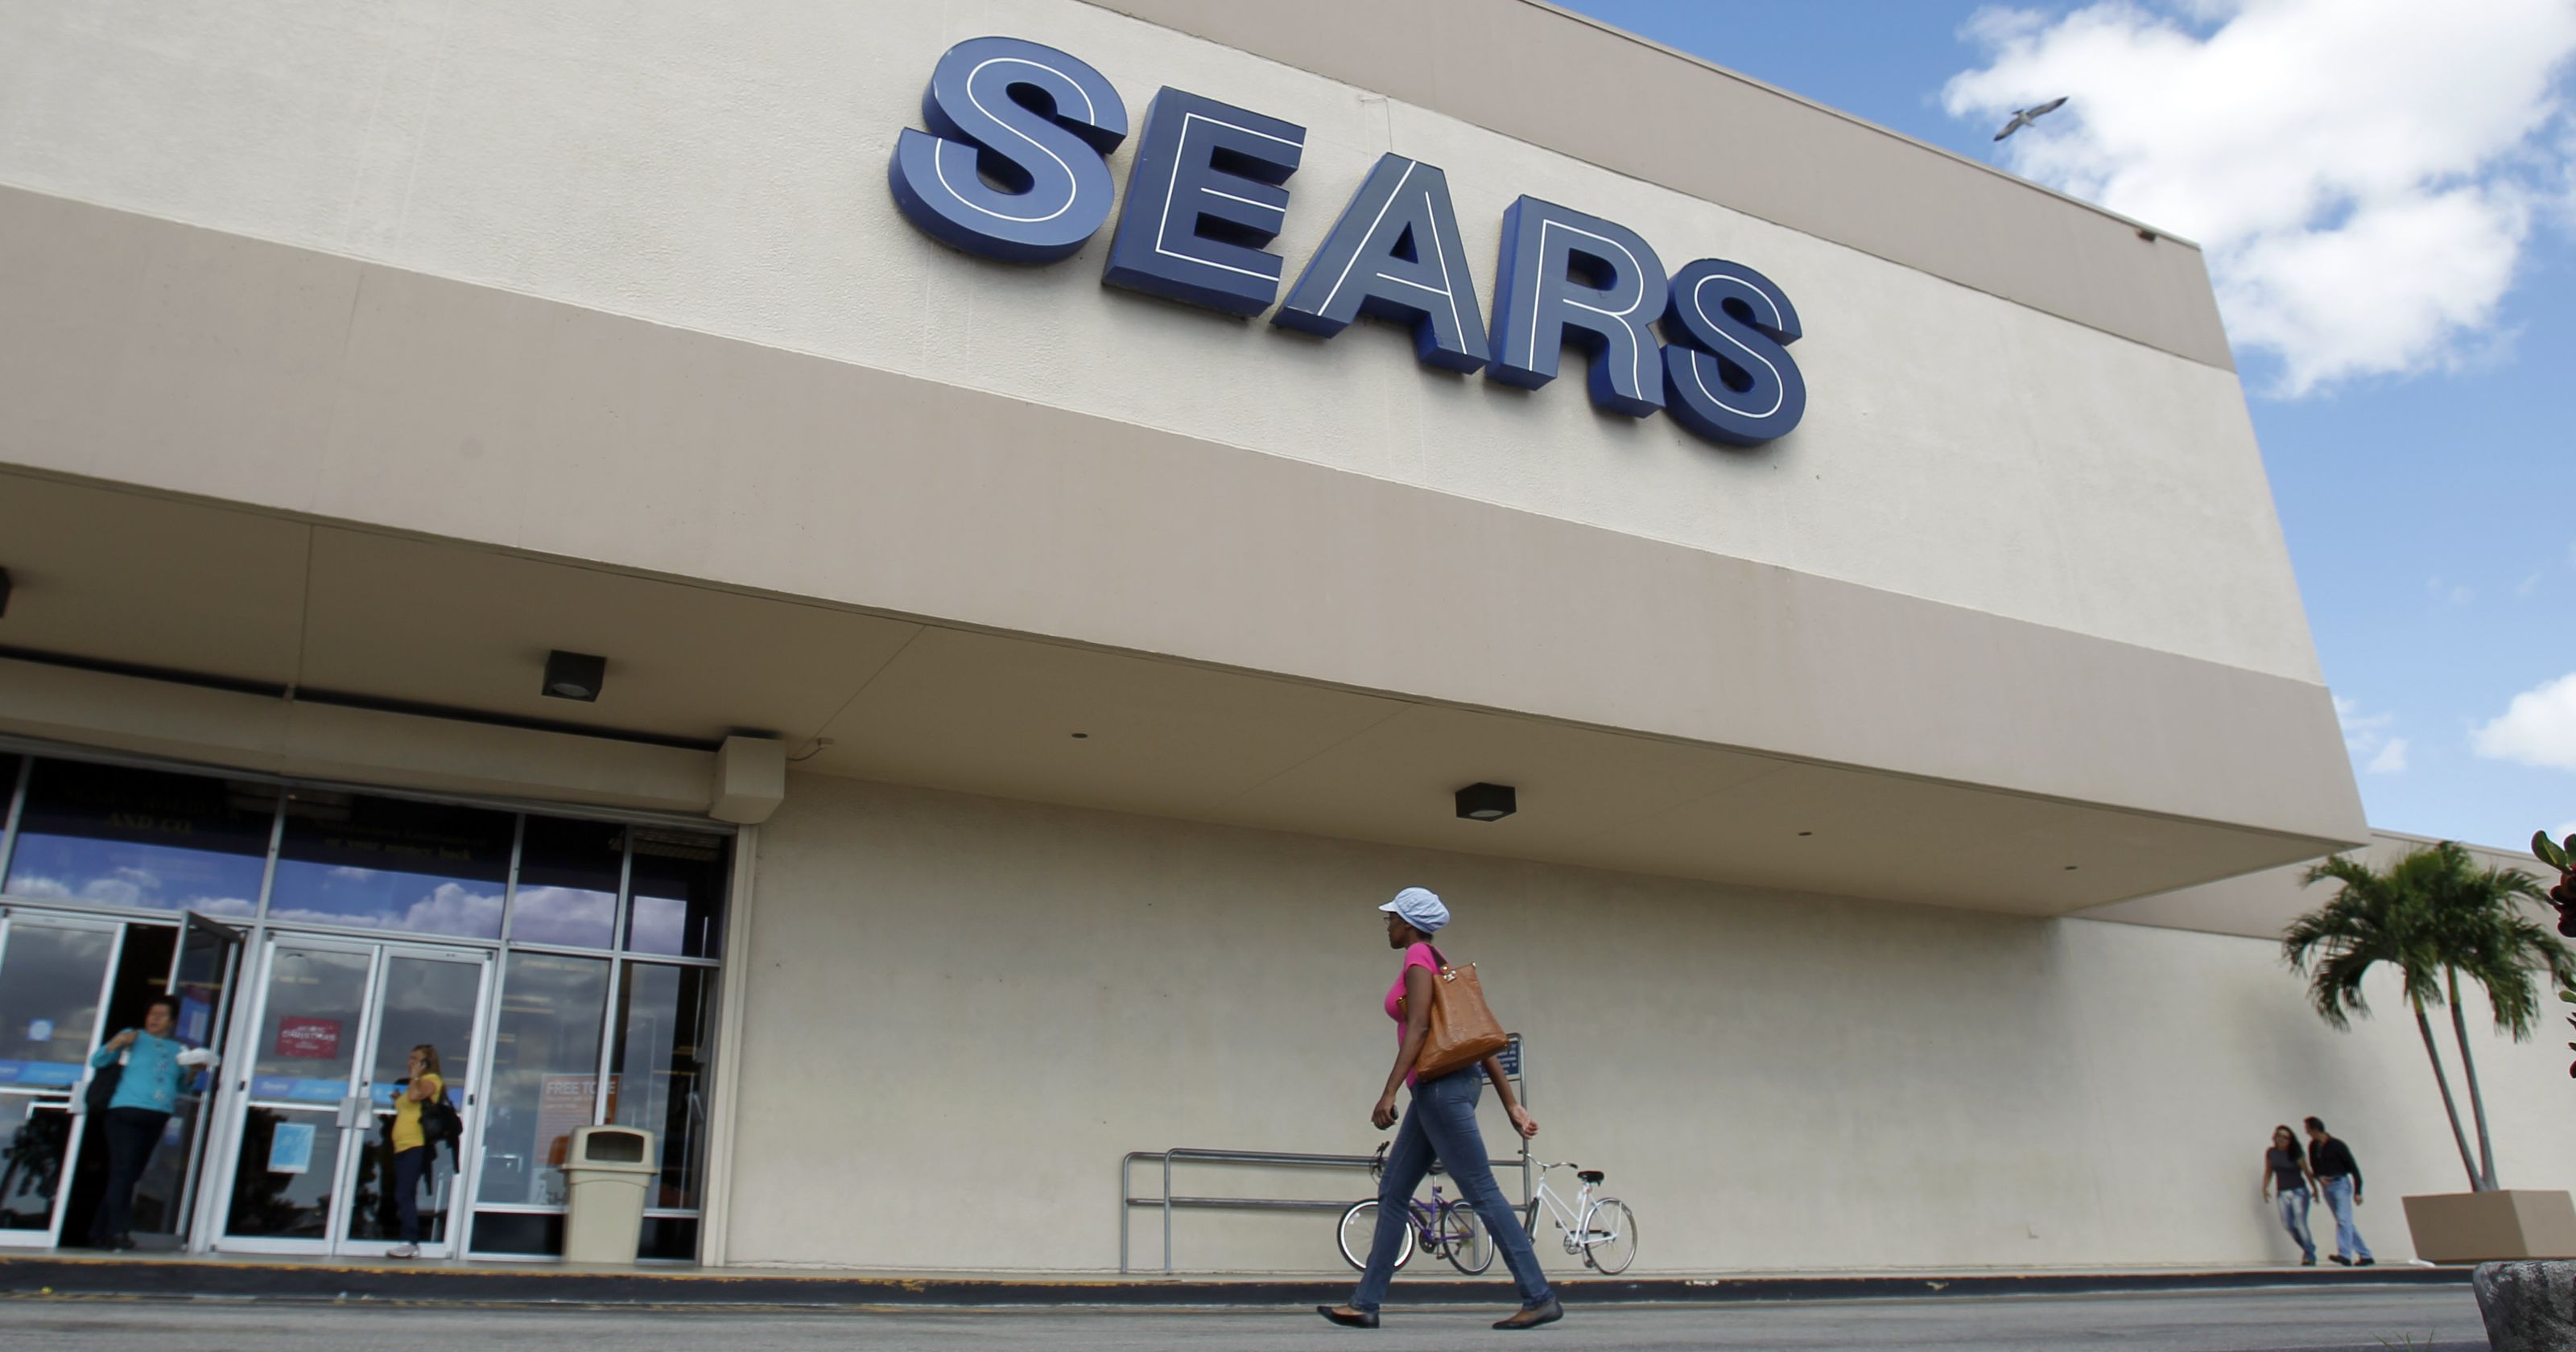  Sears cerrará 150 tiendas para salvar sus finanzas